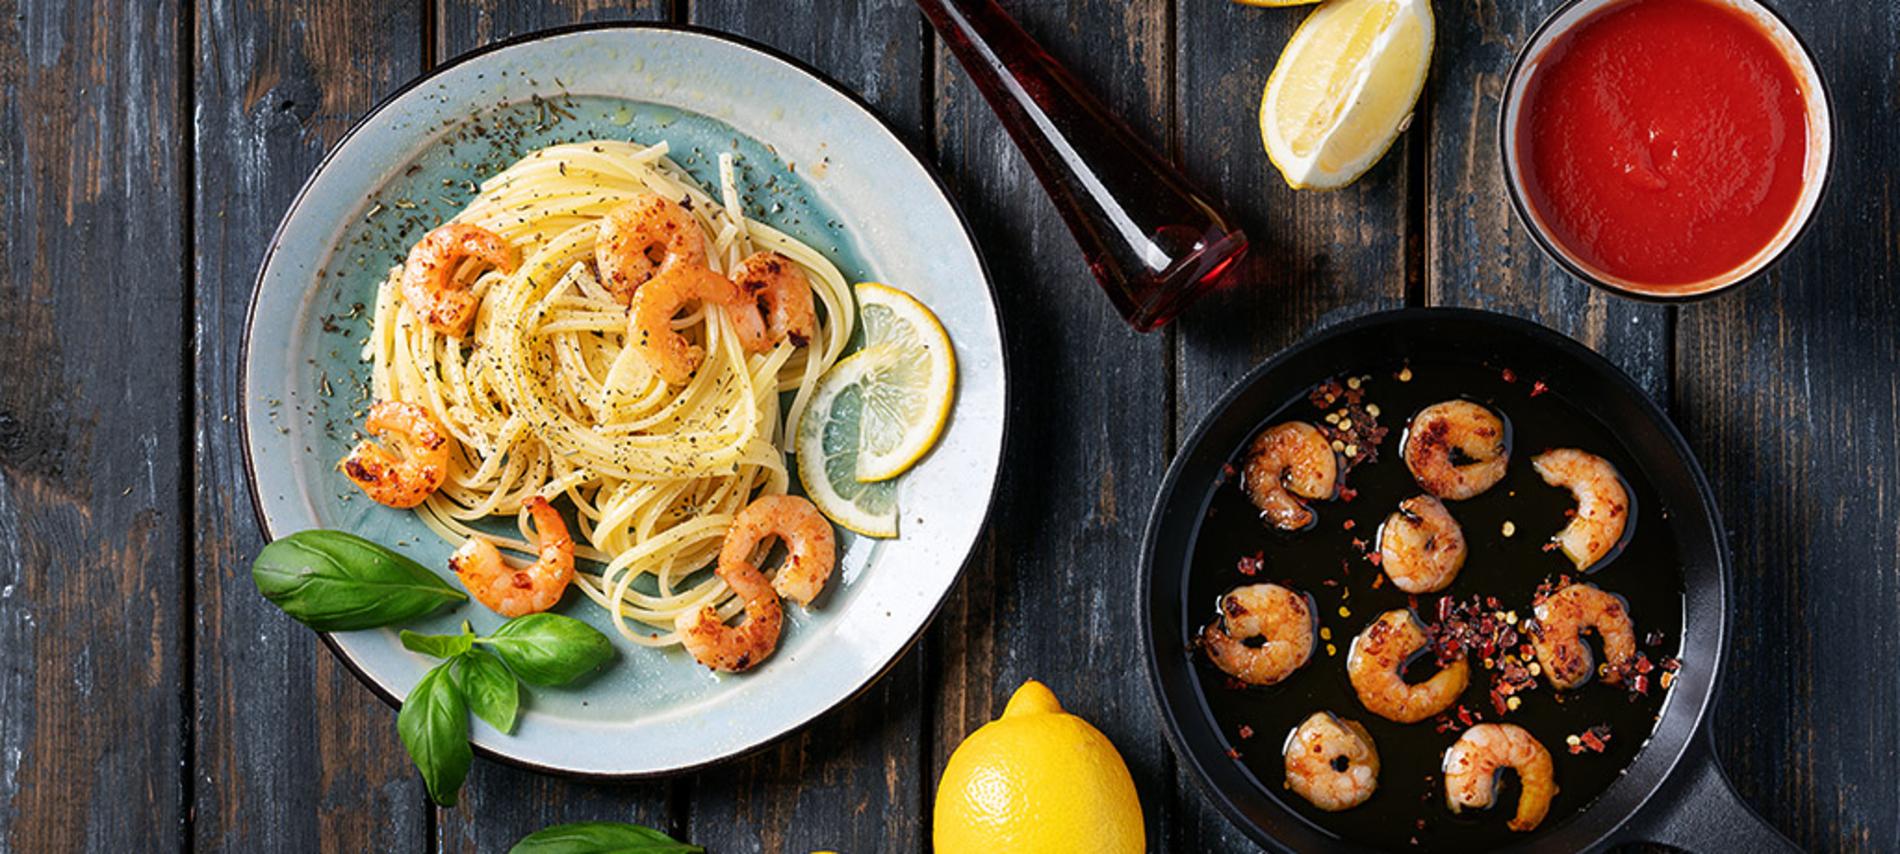 Receta de langostinos enamorados al ajillo en spaghetti al limón y arúgula